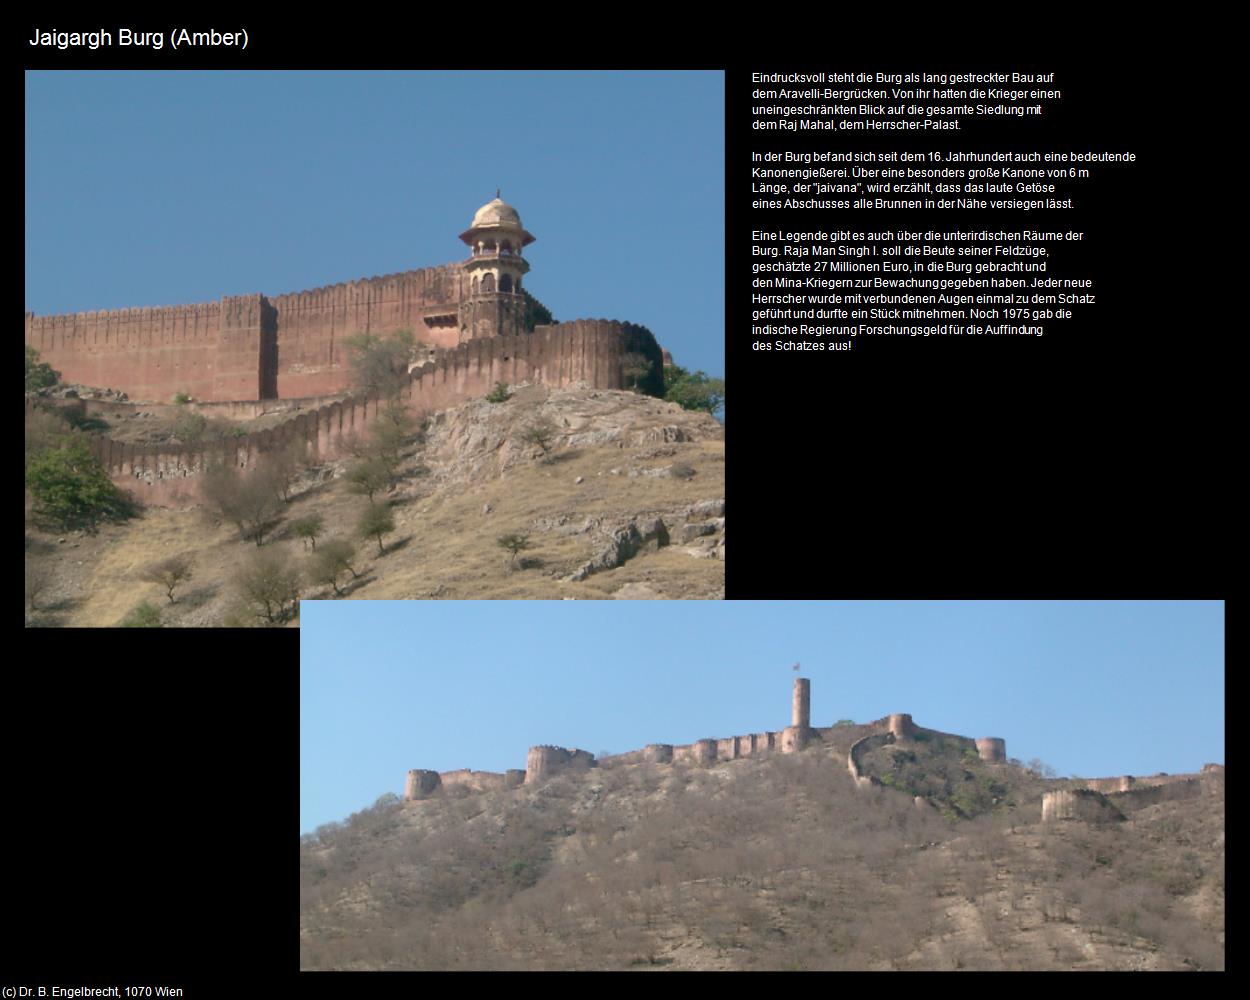 Jaigargh Burg (Amer bei Jaipur) in Rajasthan - das Land der Könige